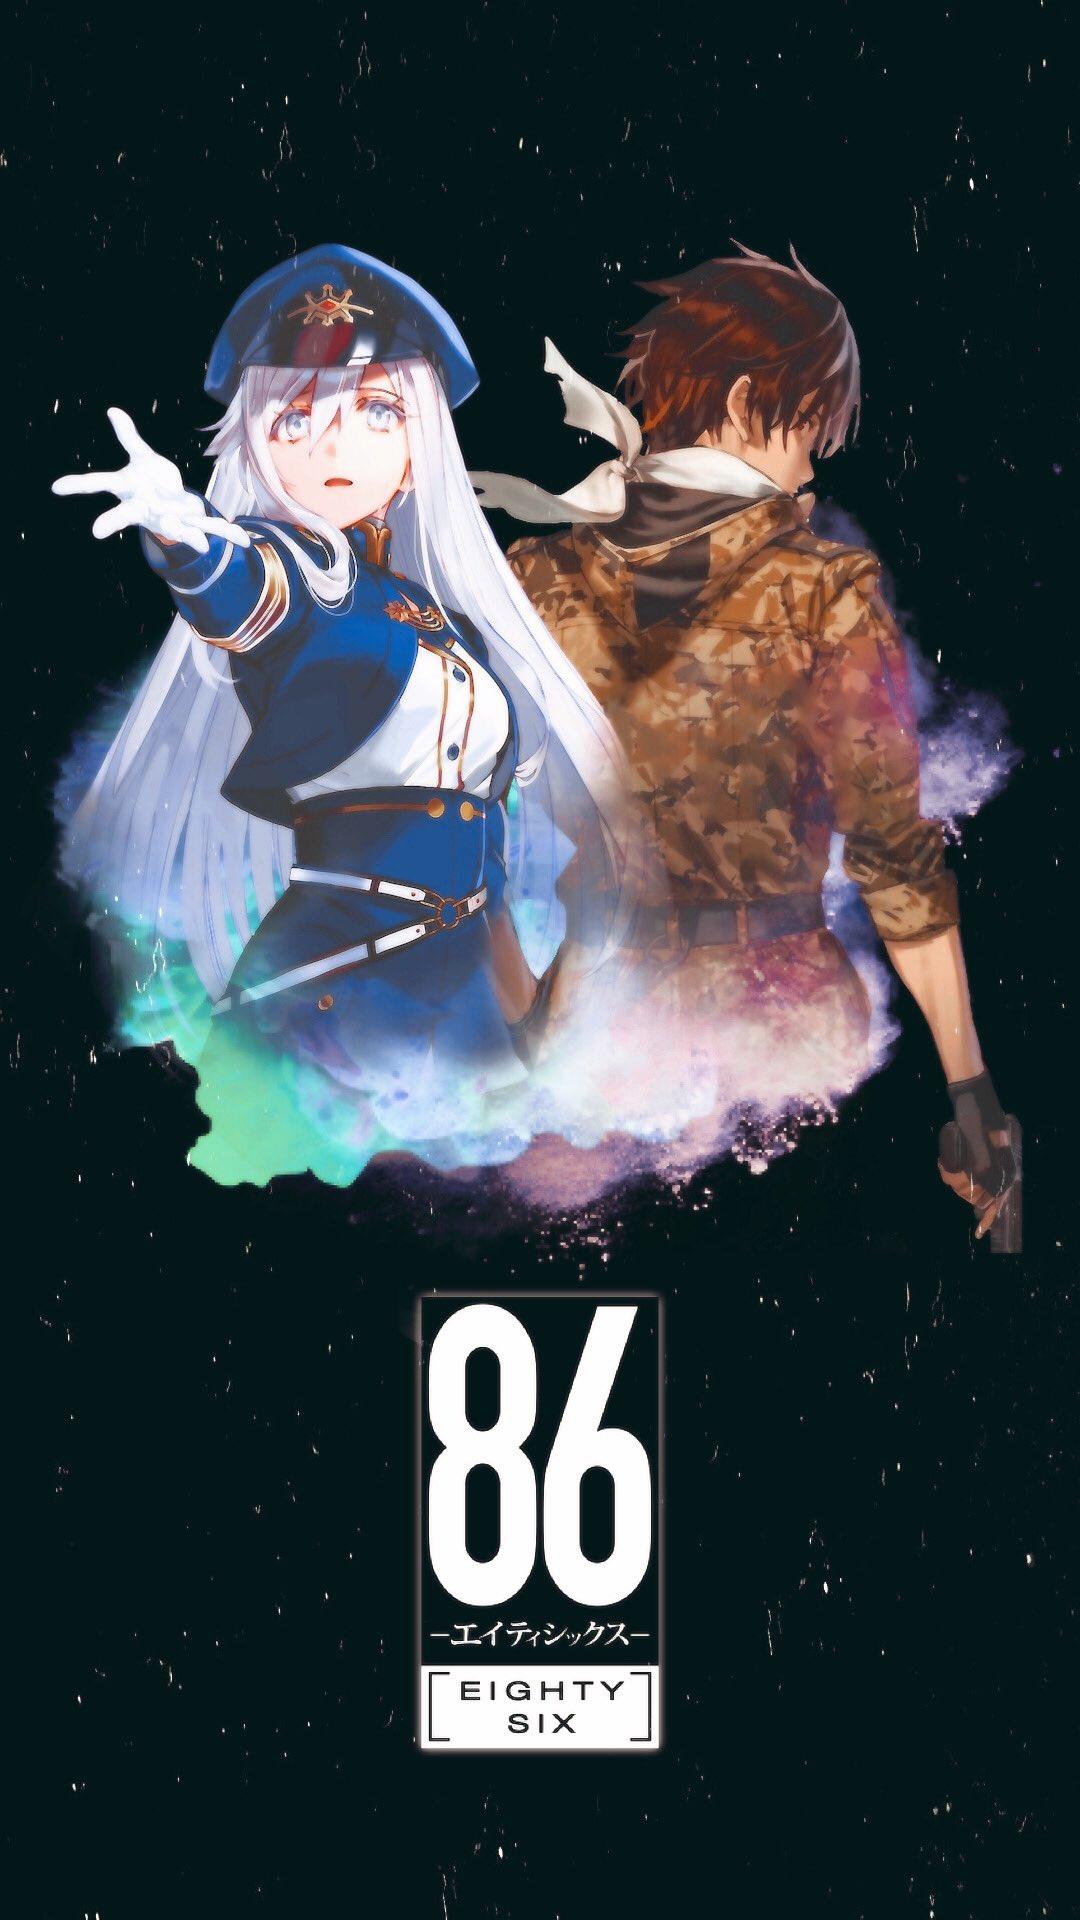 Kaiseki Anime Ep. 86 — Fall 2021 Seasonal Preview | Draggle's Anime Blog